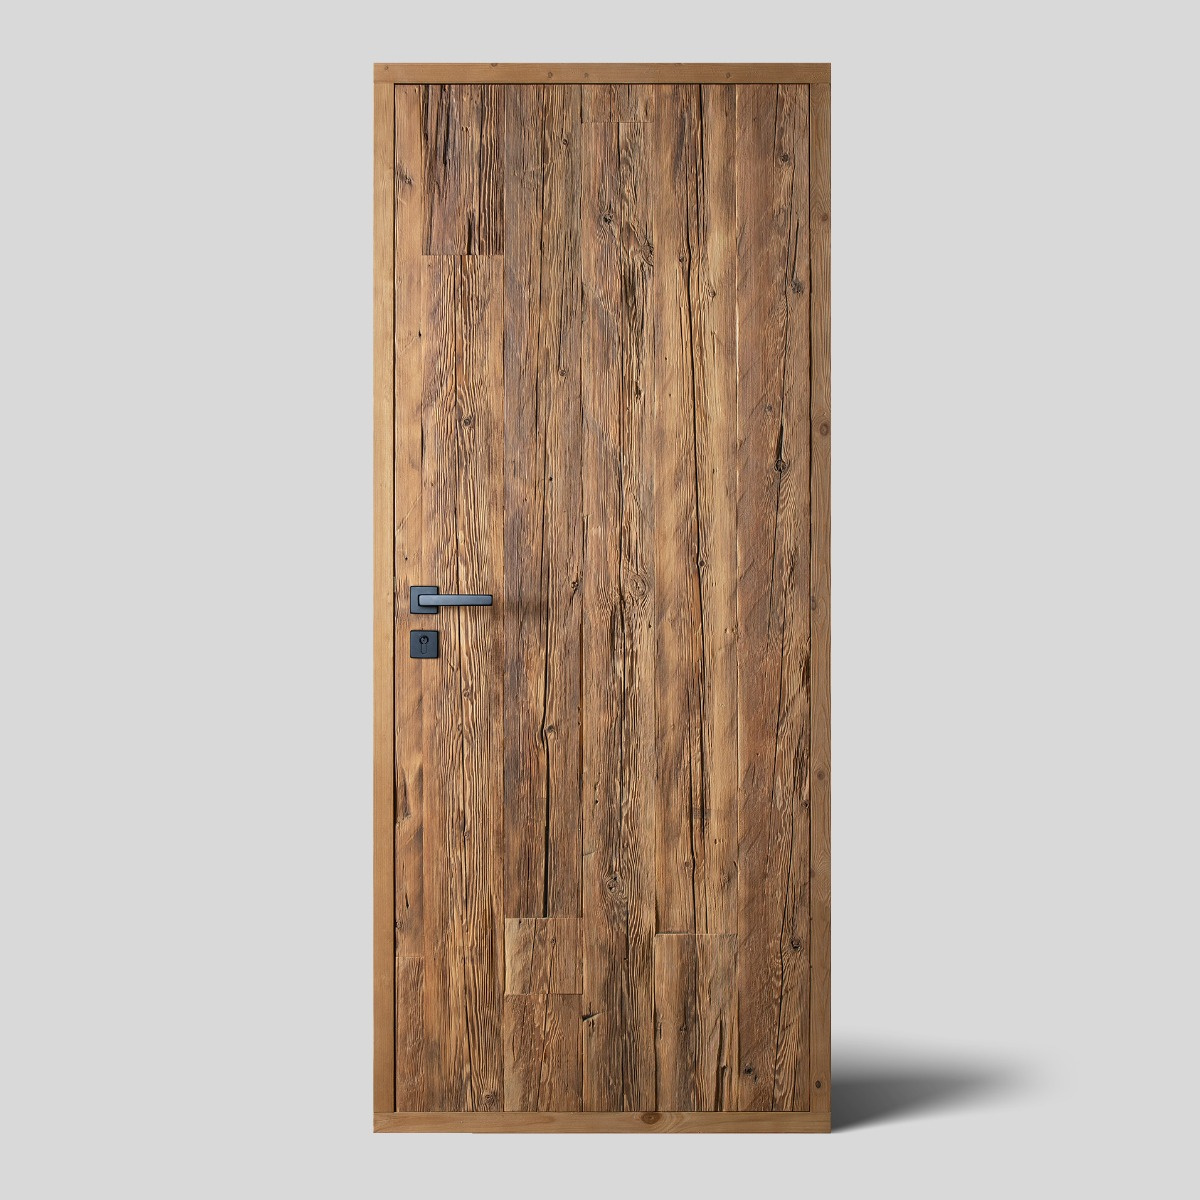 Hand-hewn weathered wood door